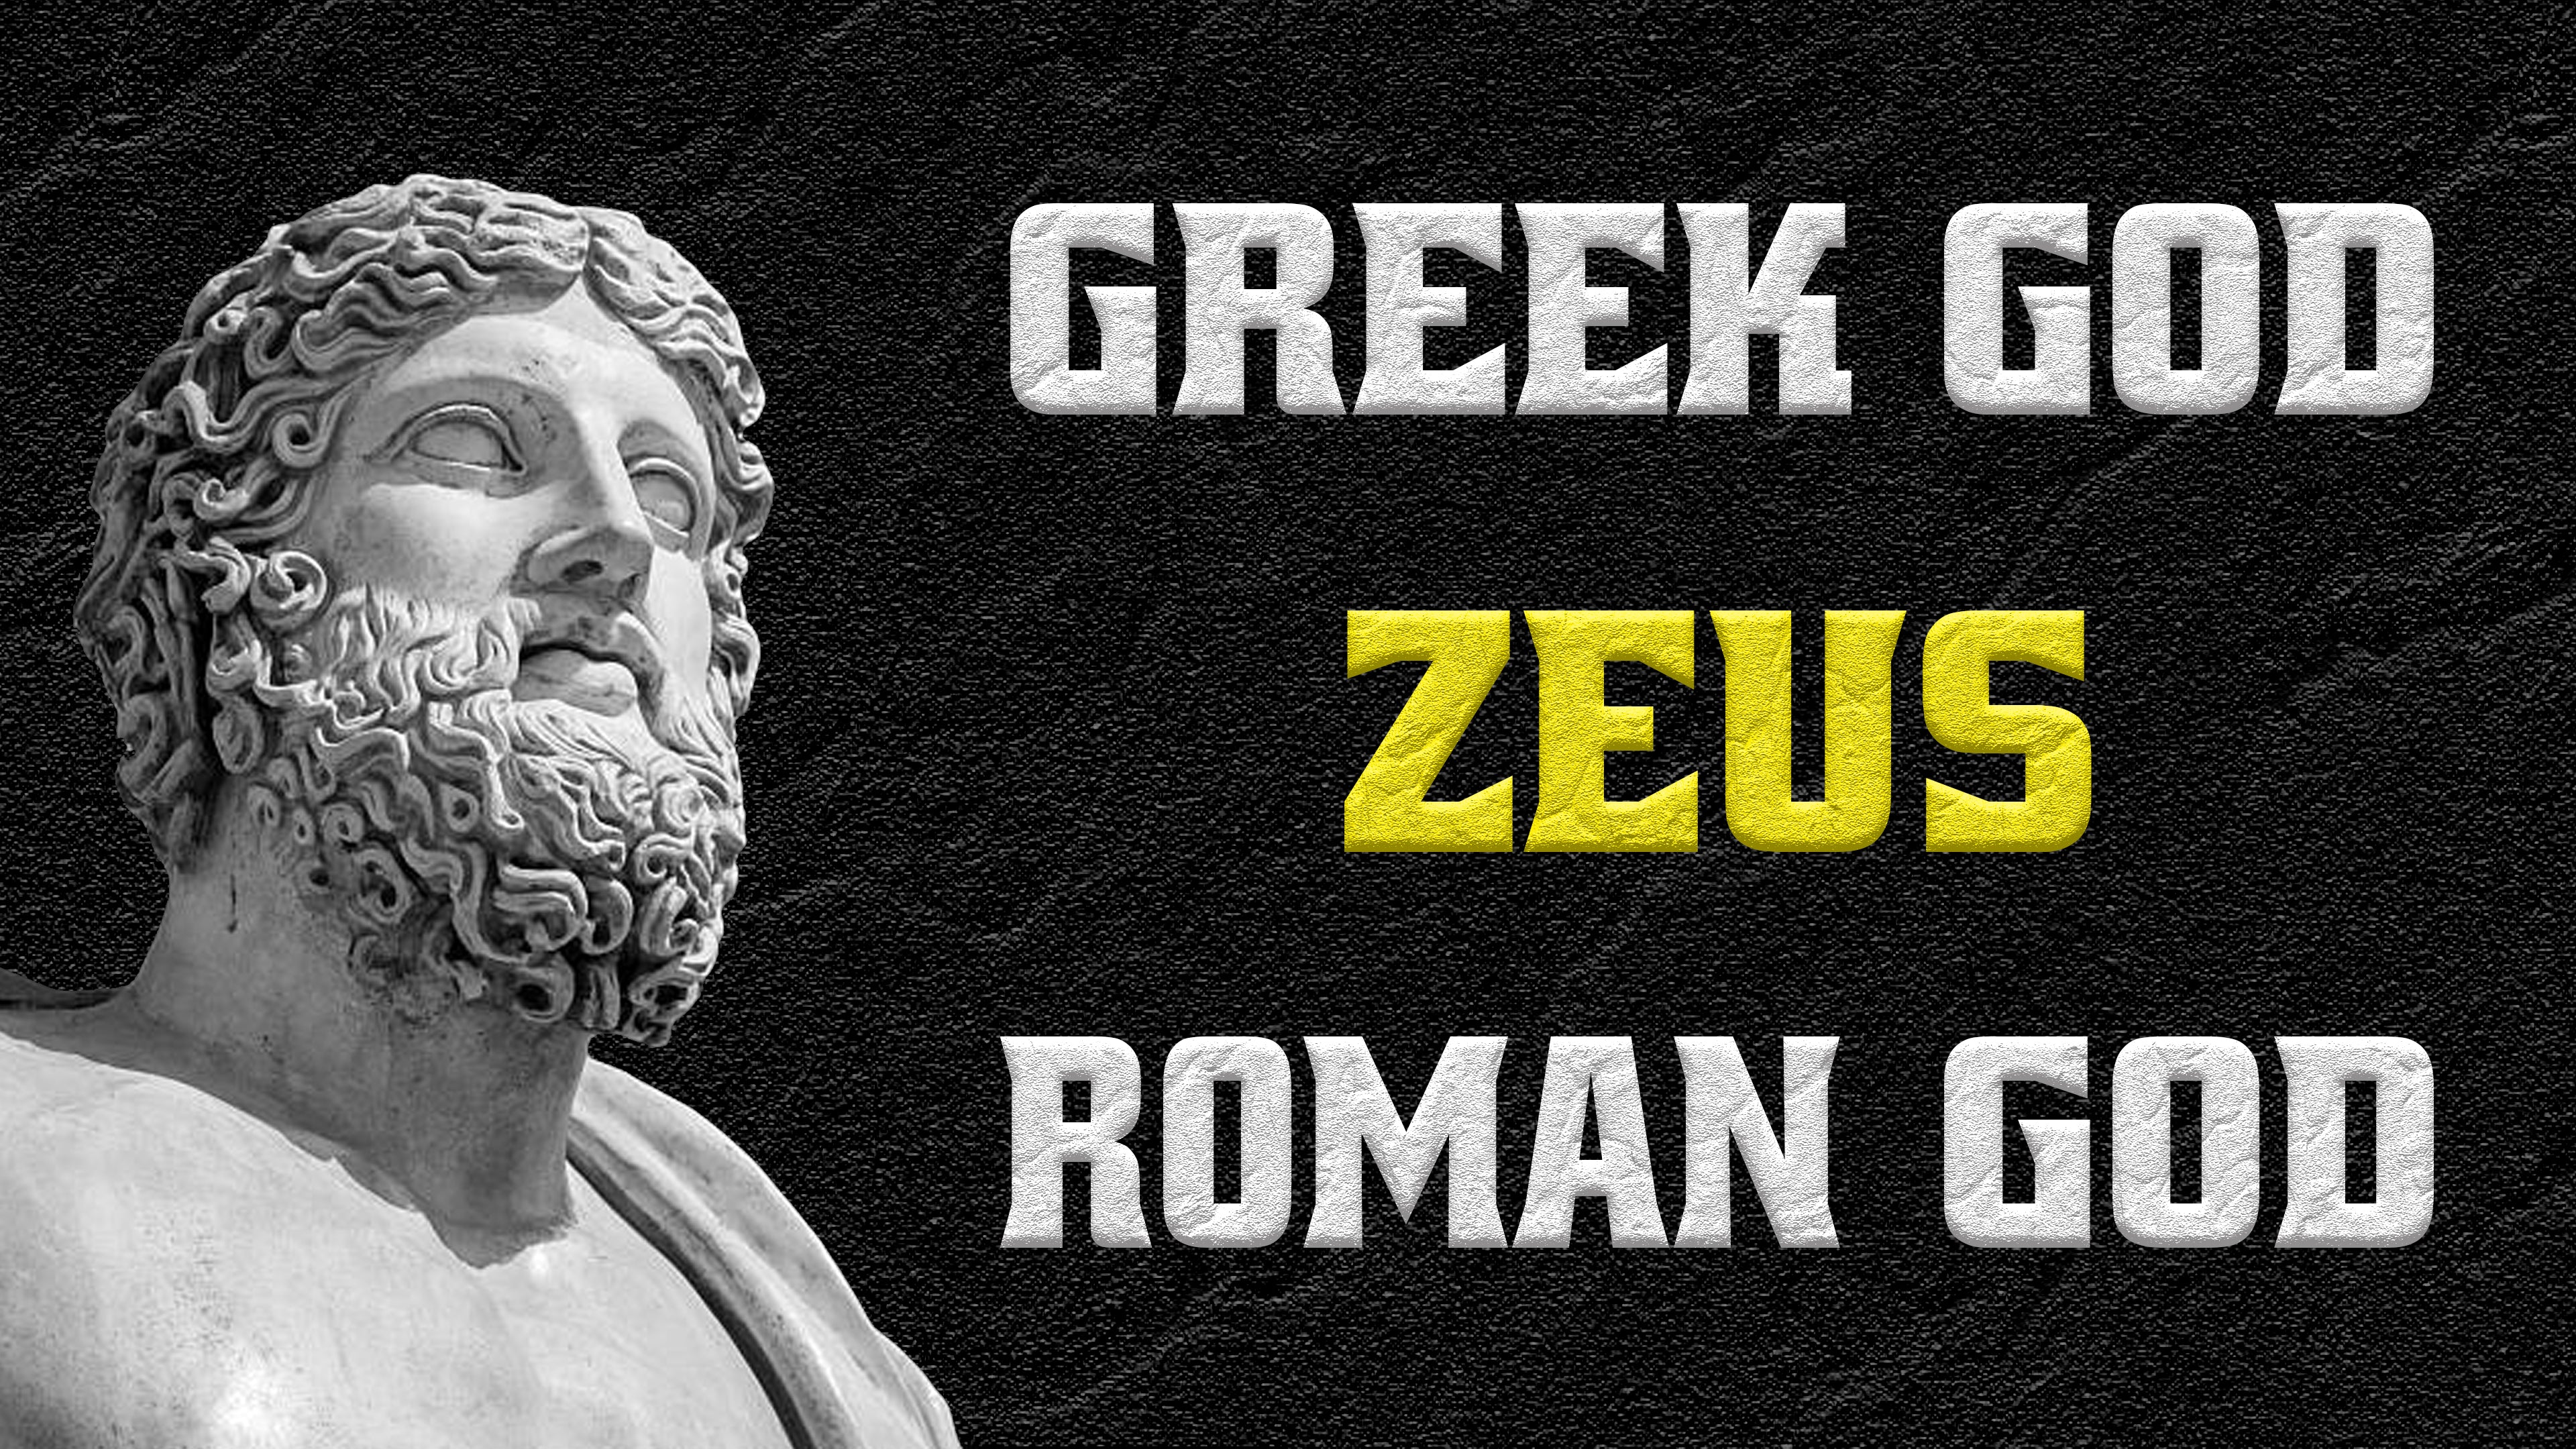 Greek God Roman God